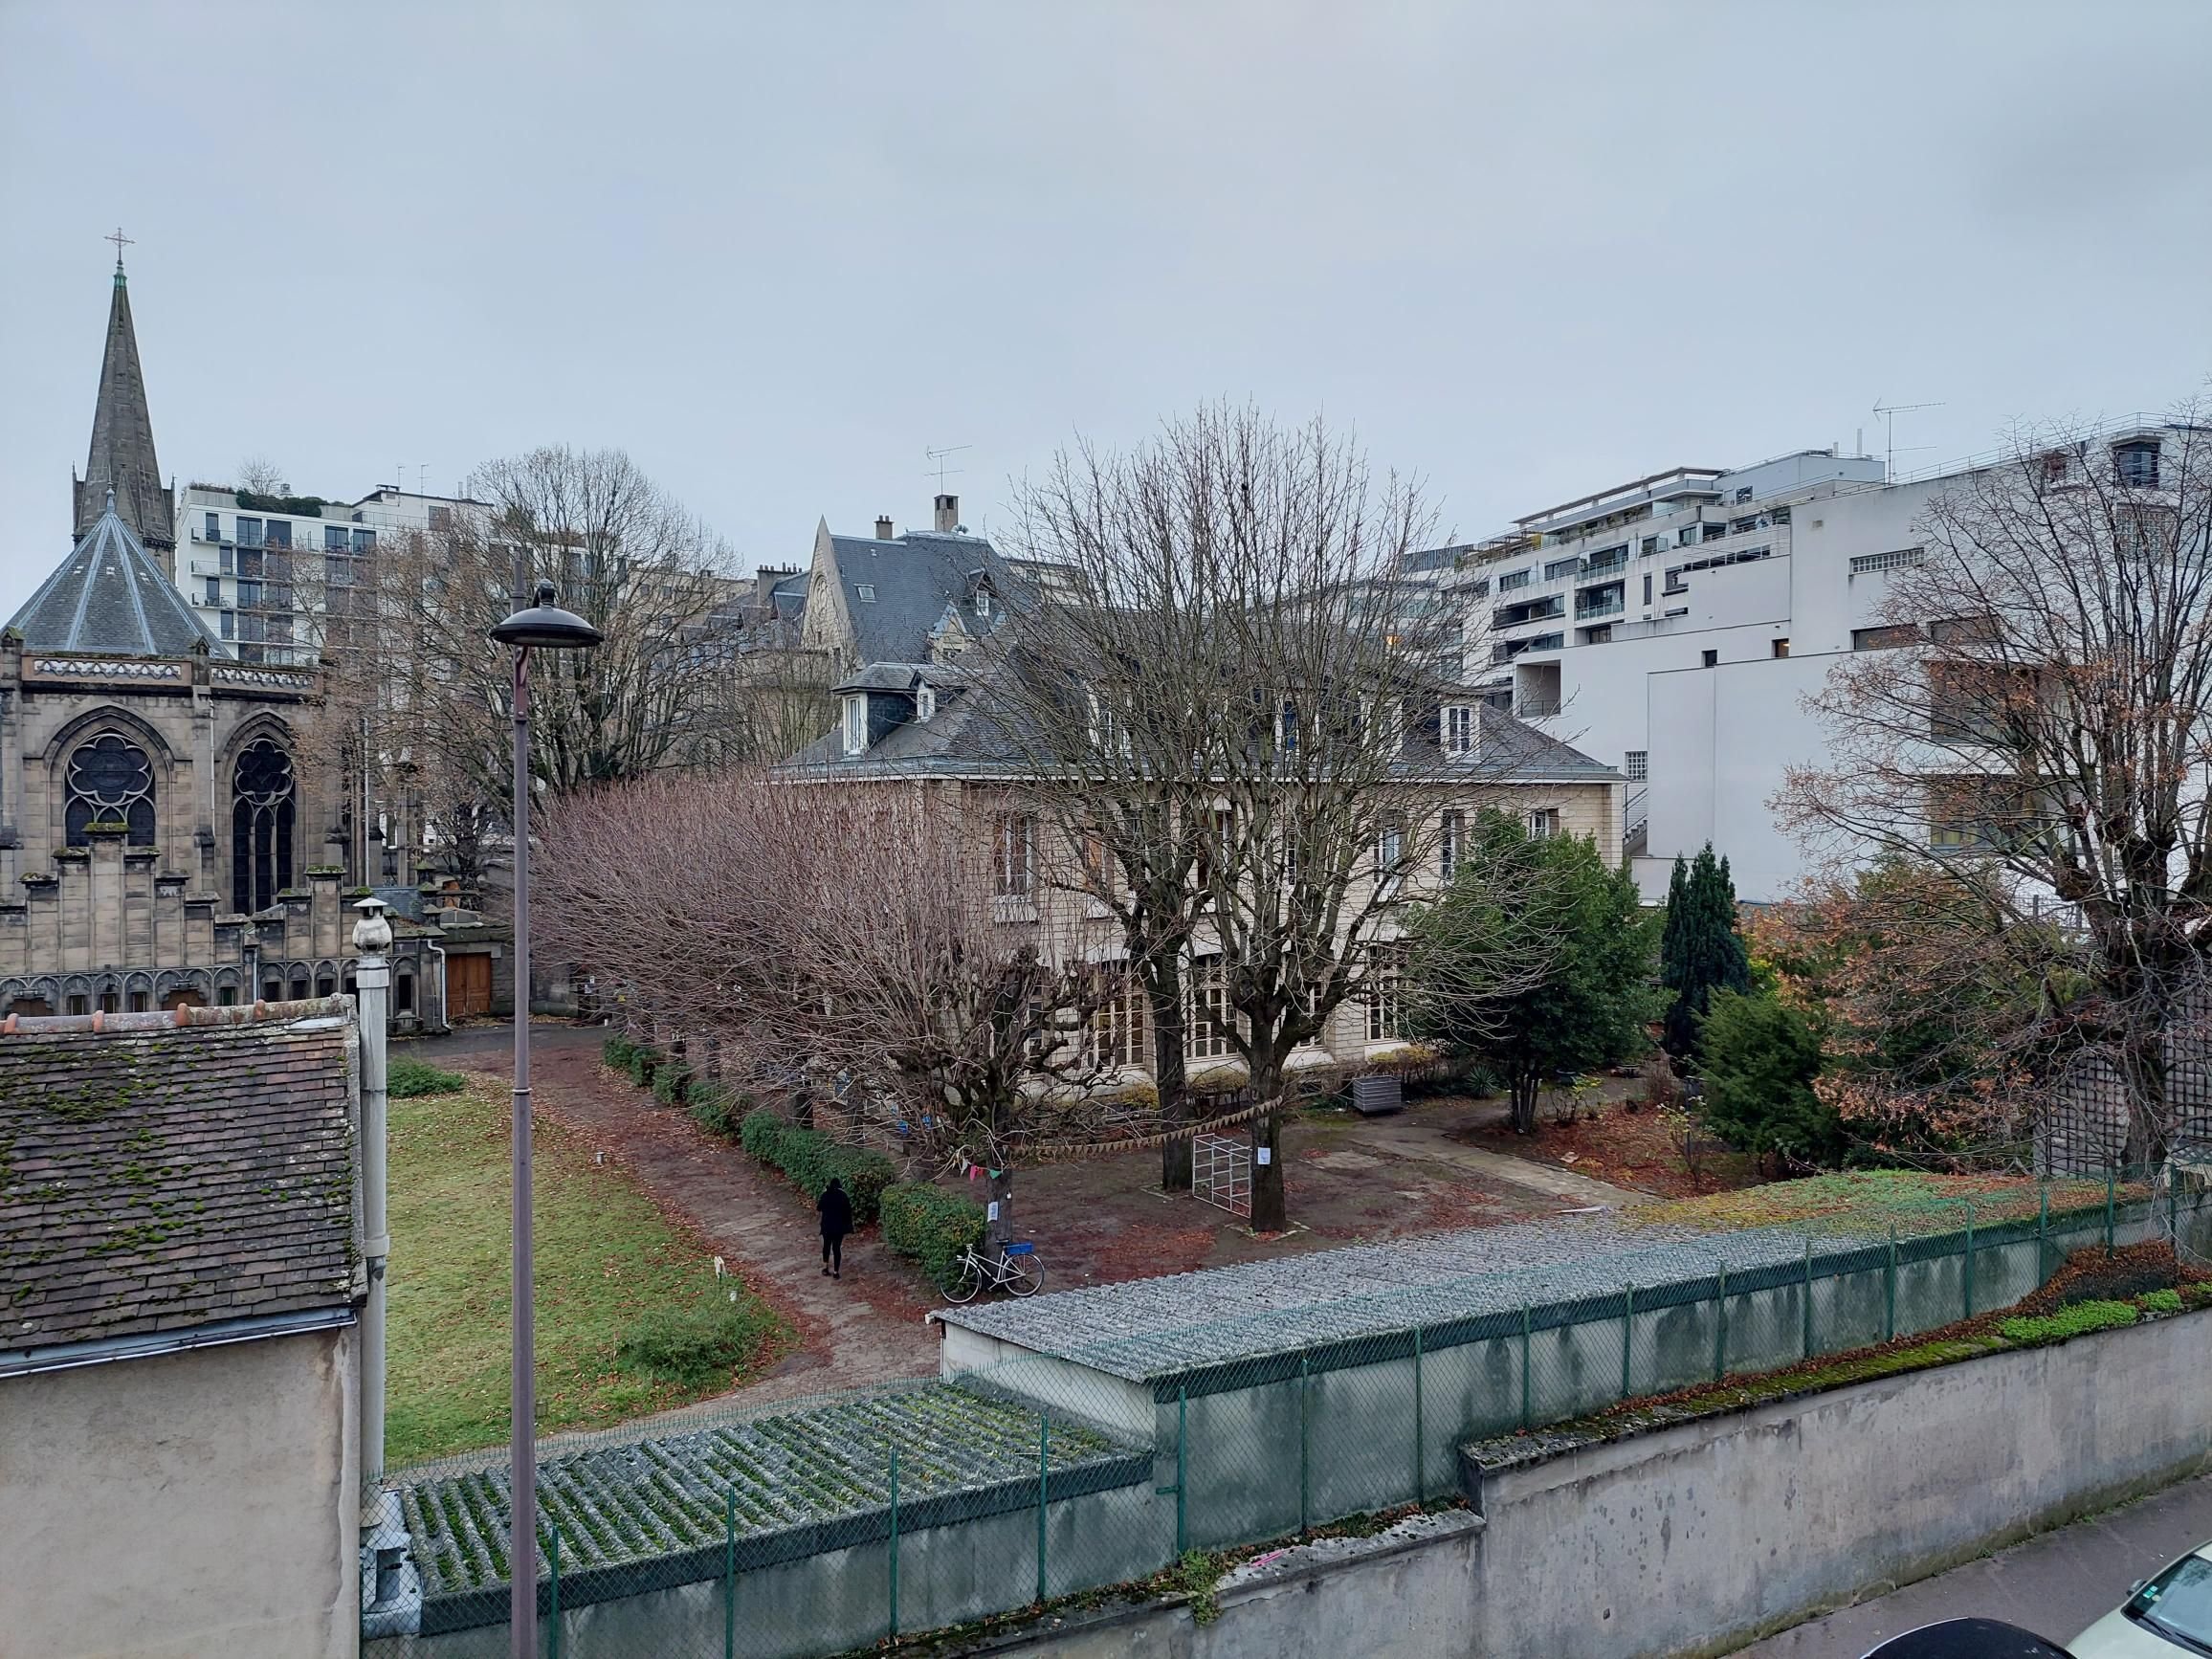 Paris (XIVe). Le site de l'ancien couvent Reille, un coin de campagne boisée en plein Paris, appartient désormais à l’opérateur immobilier In’li. LP/E.S.